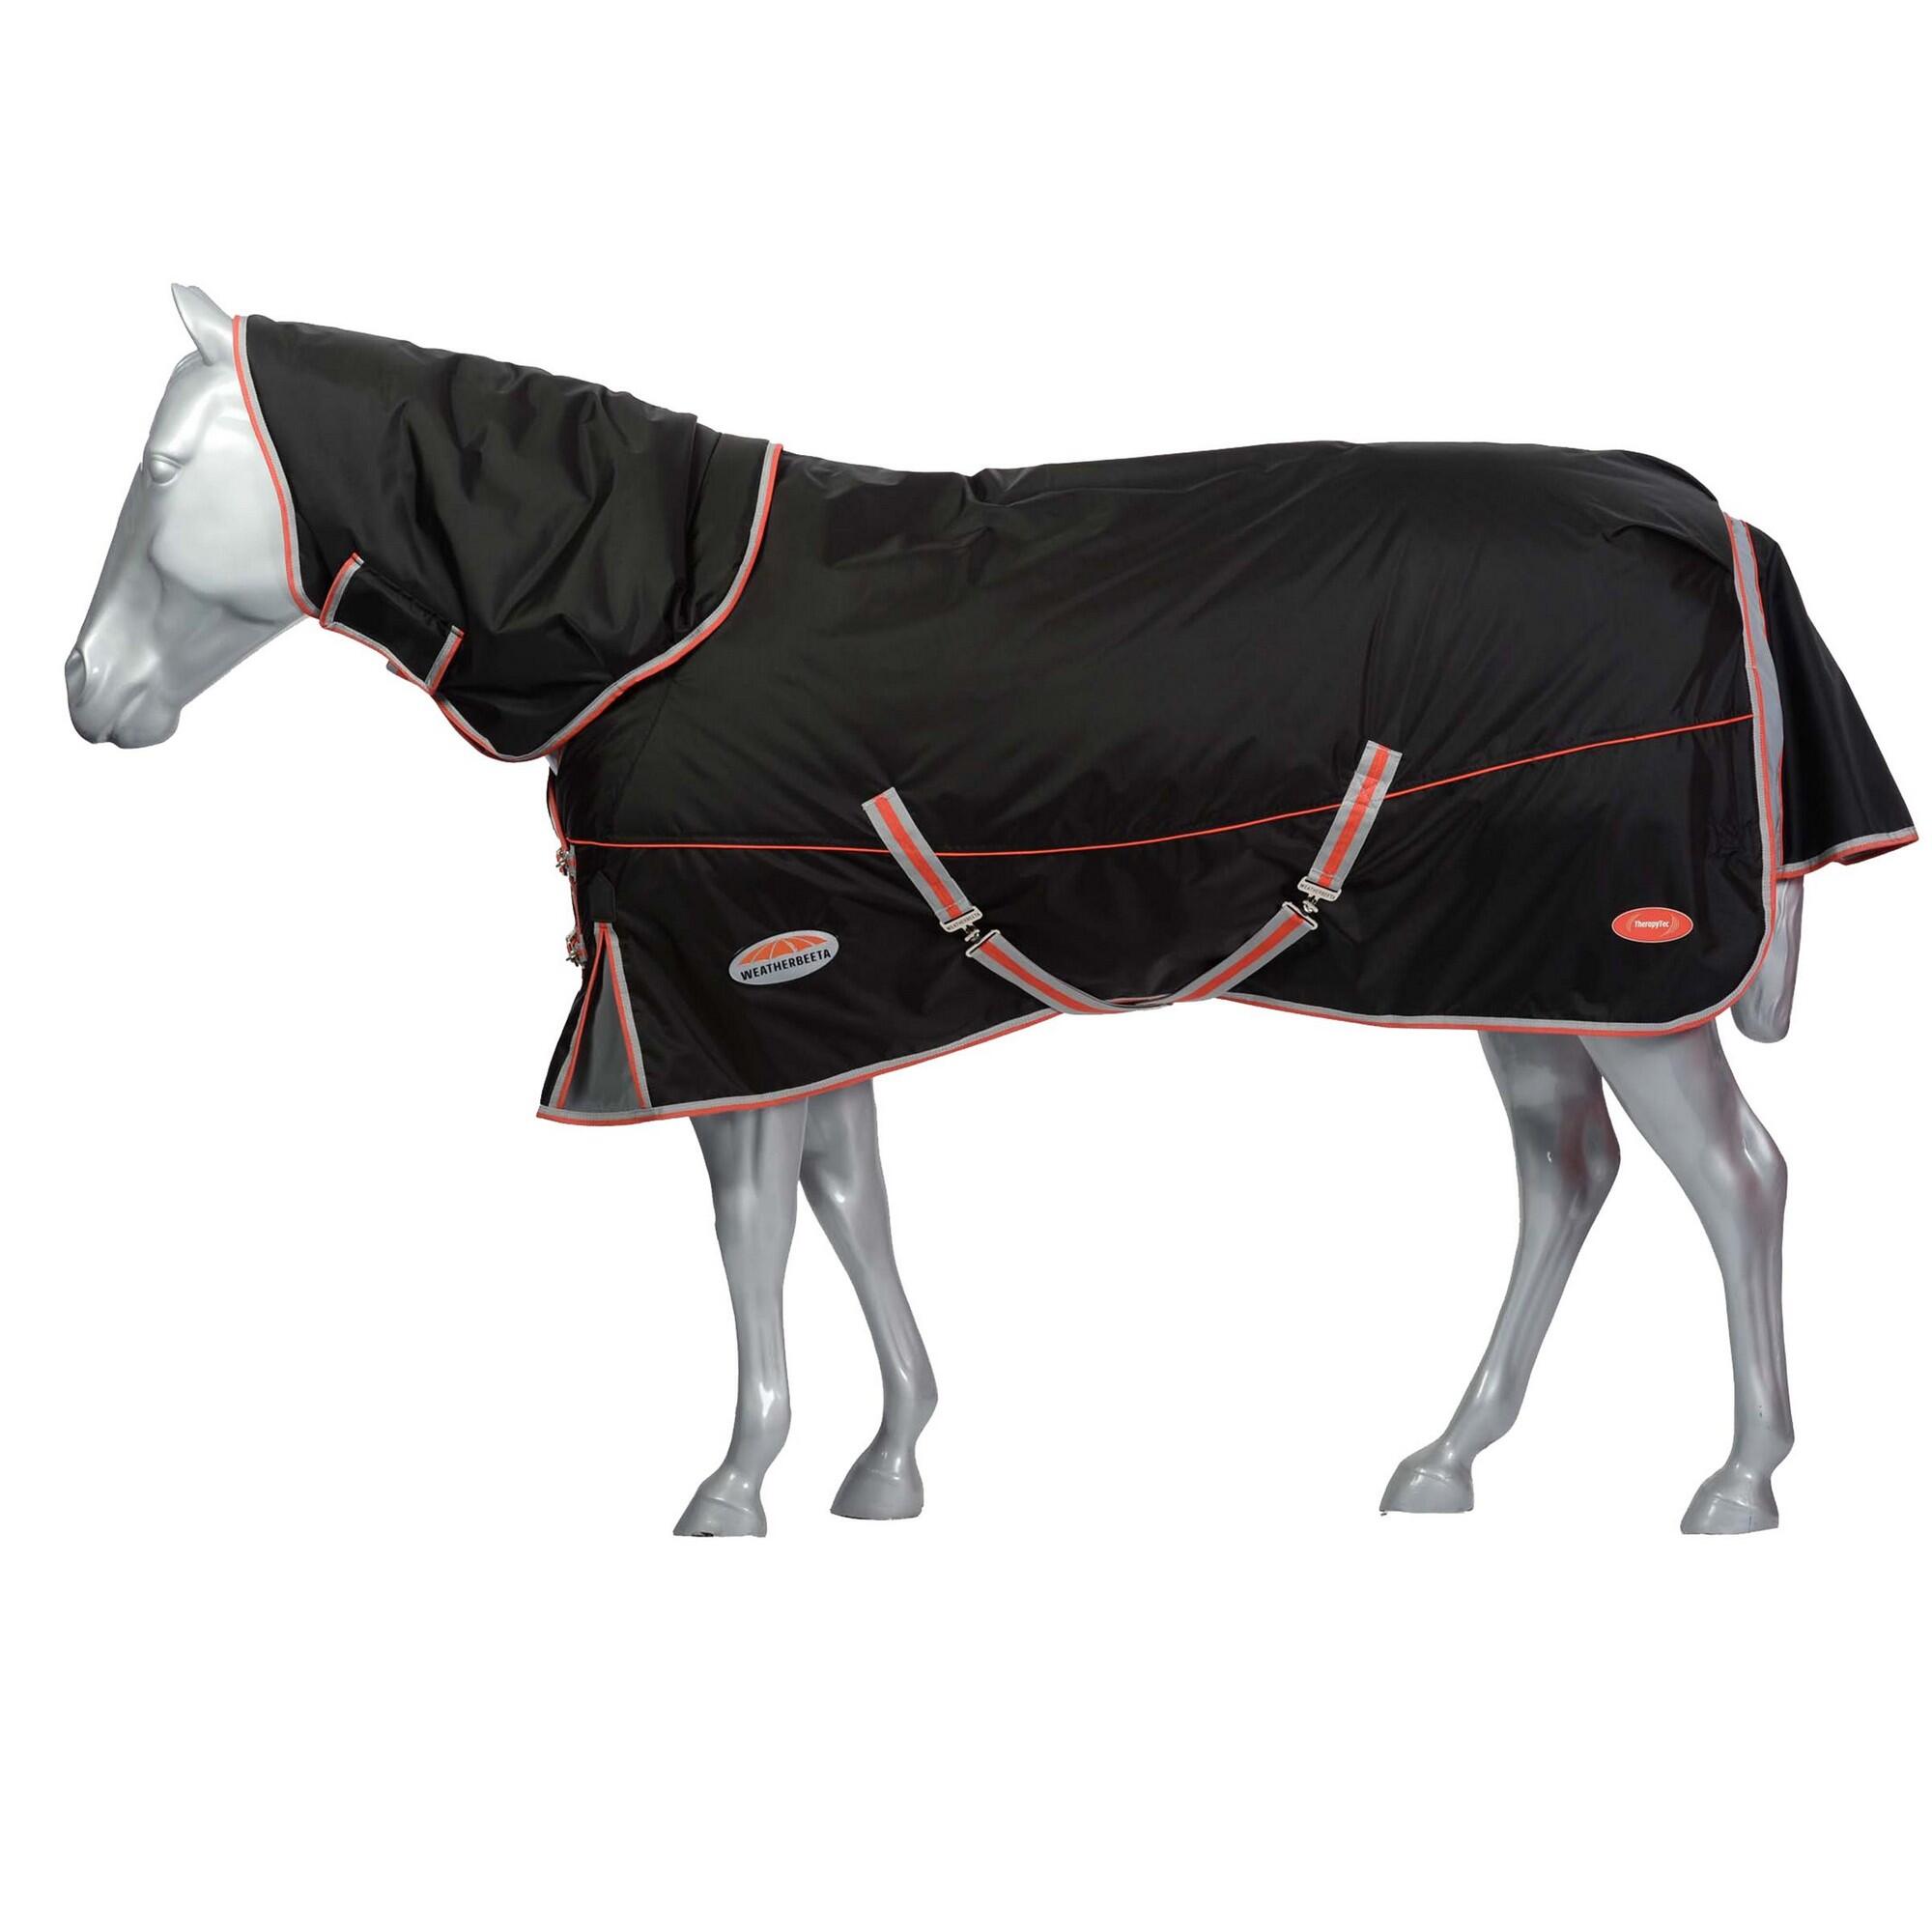 Comfitec Premier Therapy Tec Detachable Neck Horse Turnout Rug 1/4